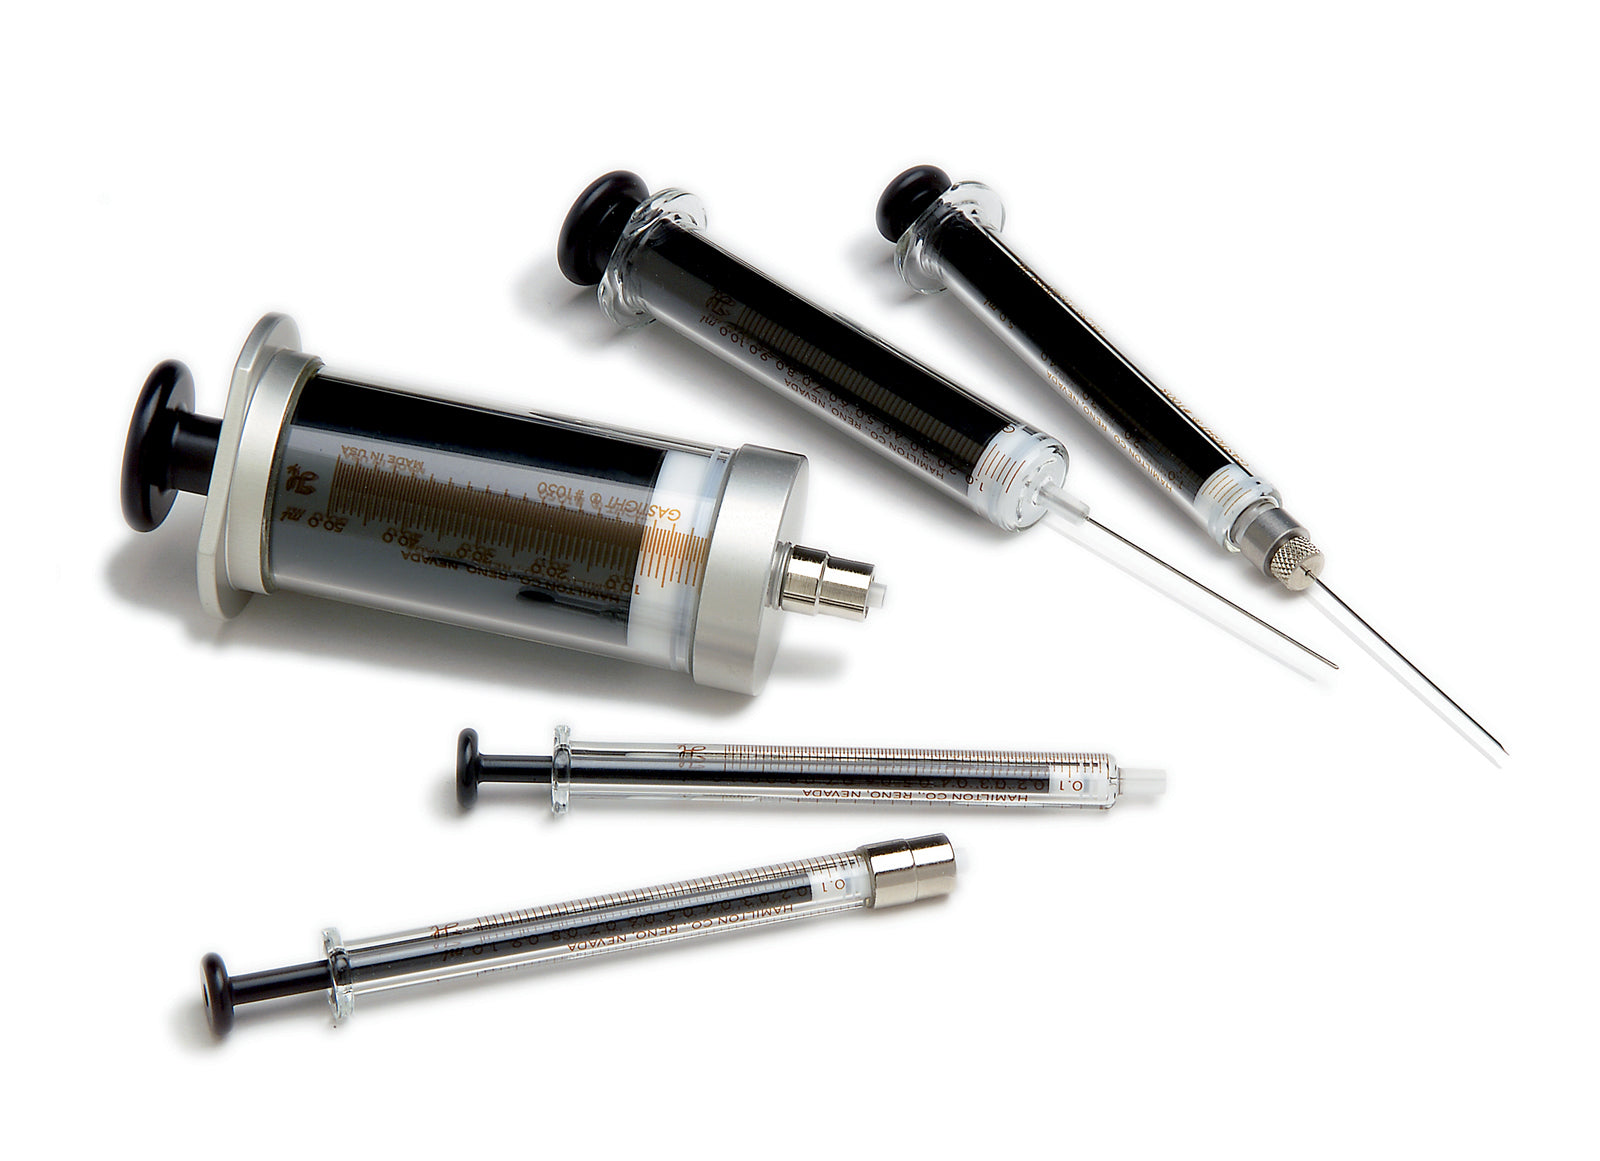 Hamilton Company 1000 Series Gastight Syringes